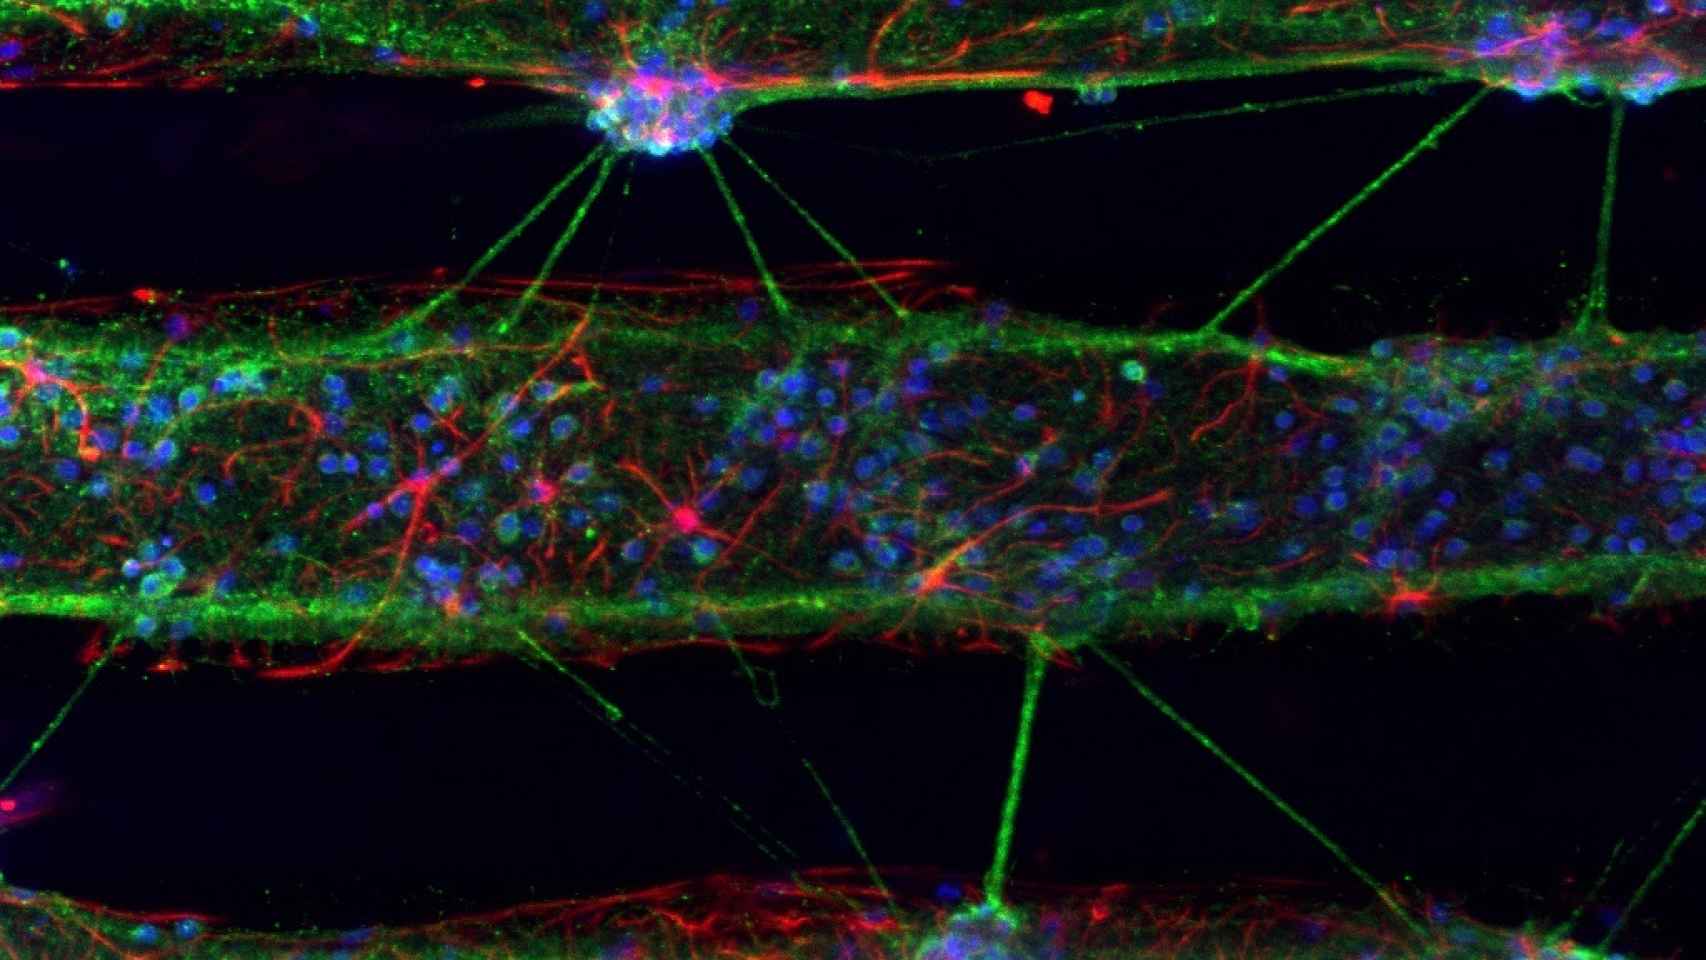 Cultivos neuronales marcados con anticuerpos fluorescentes.